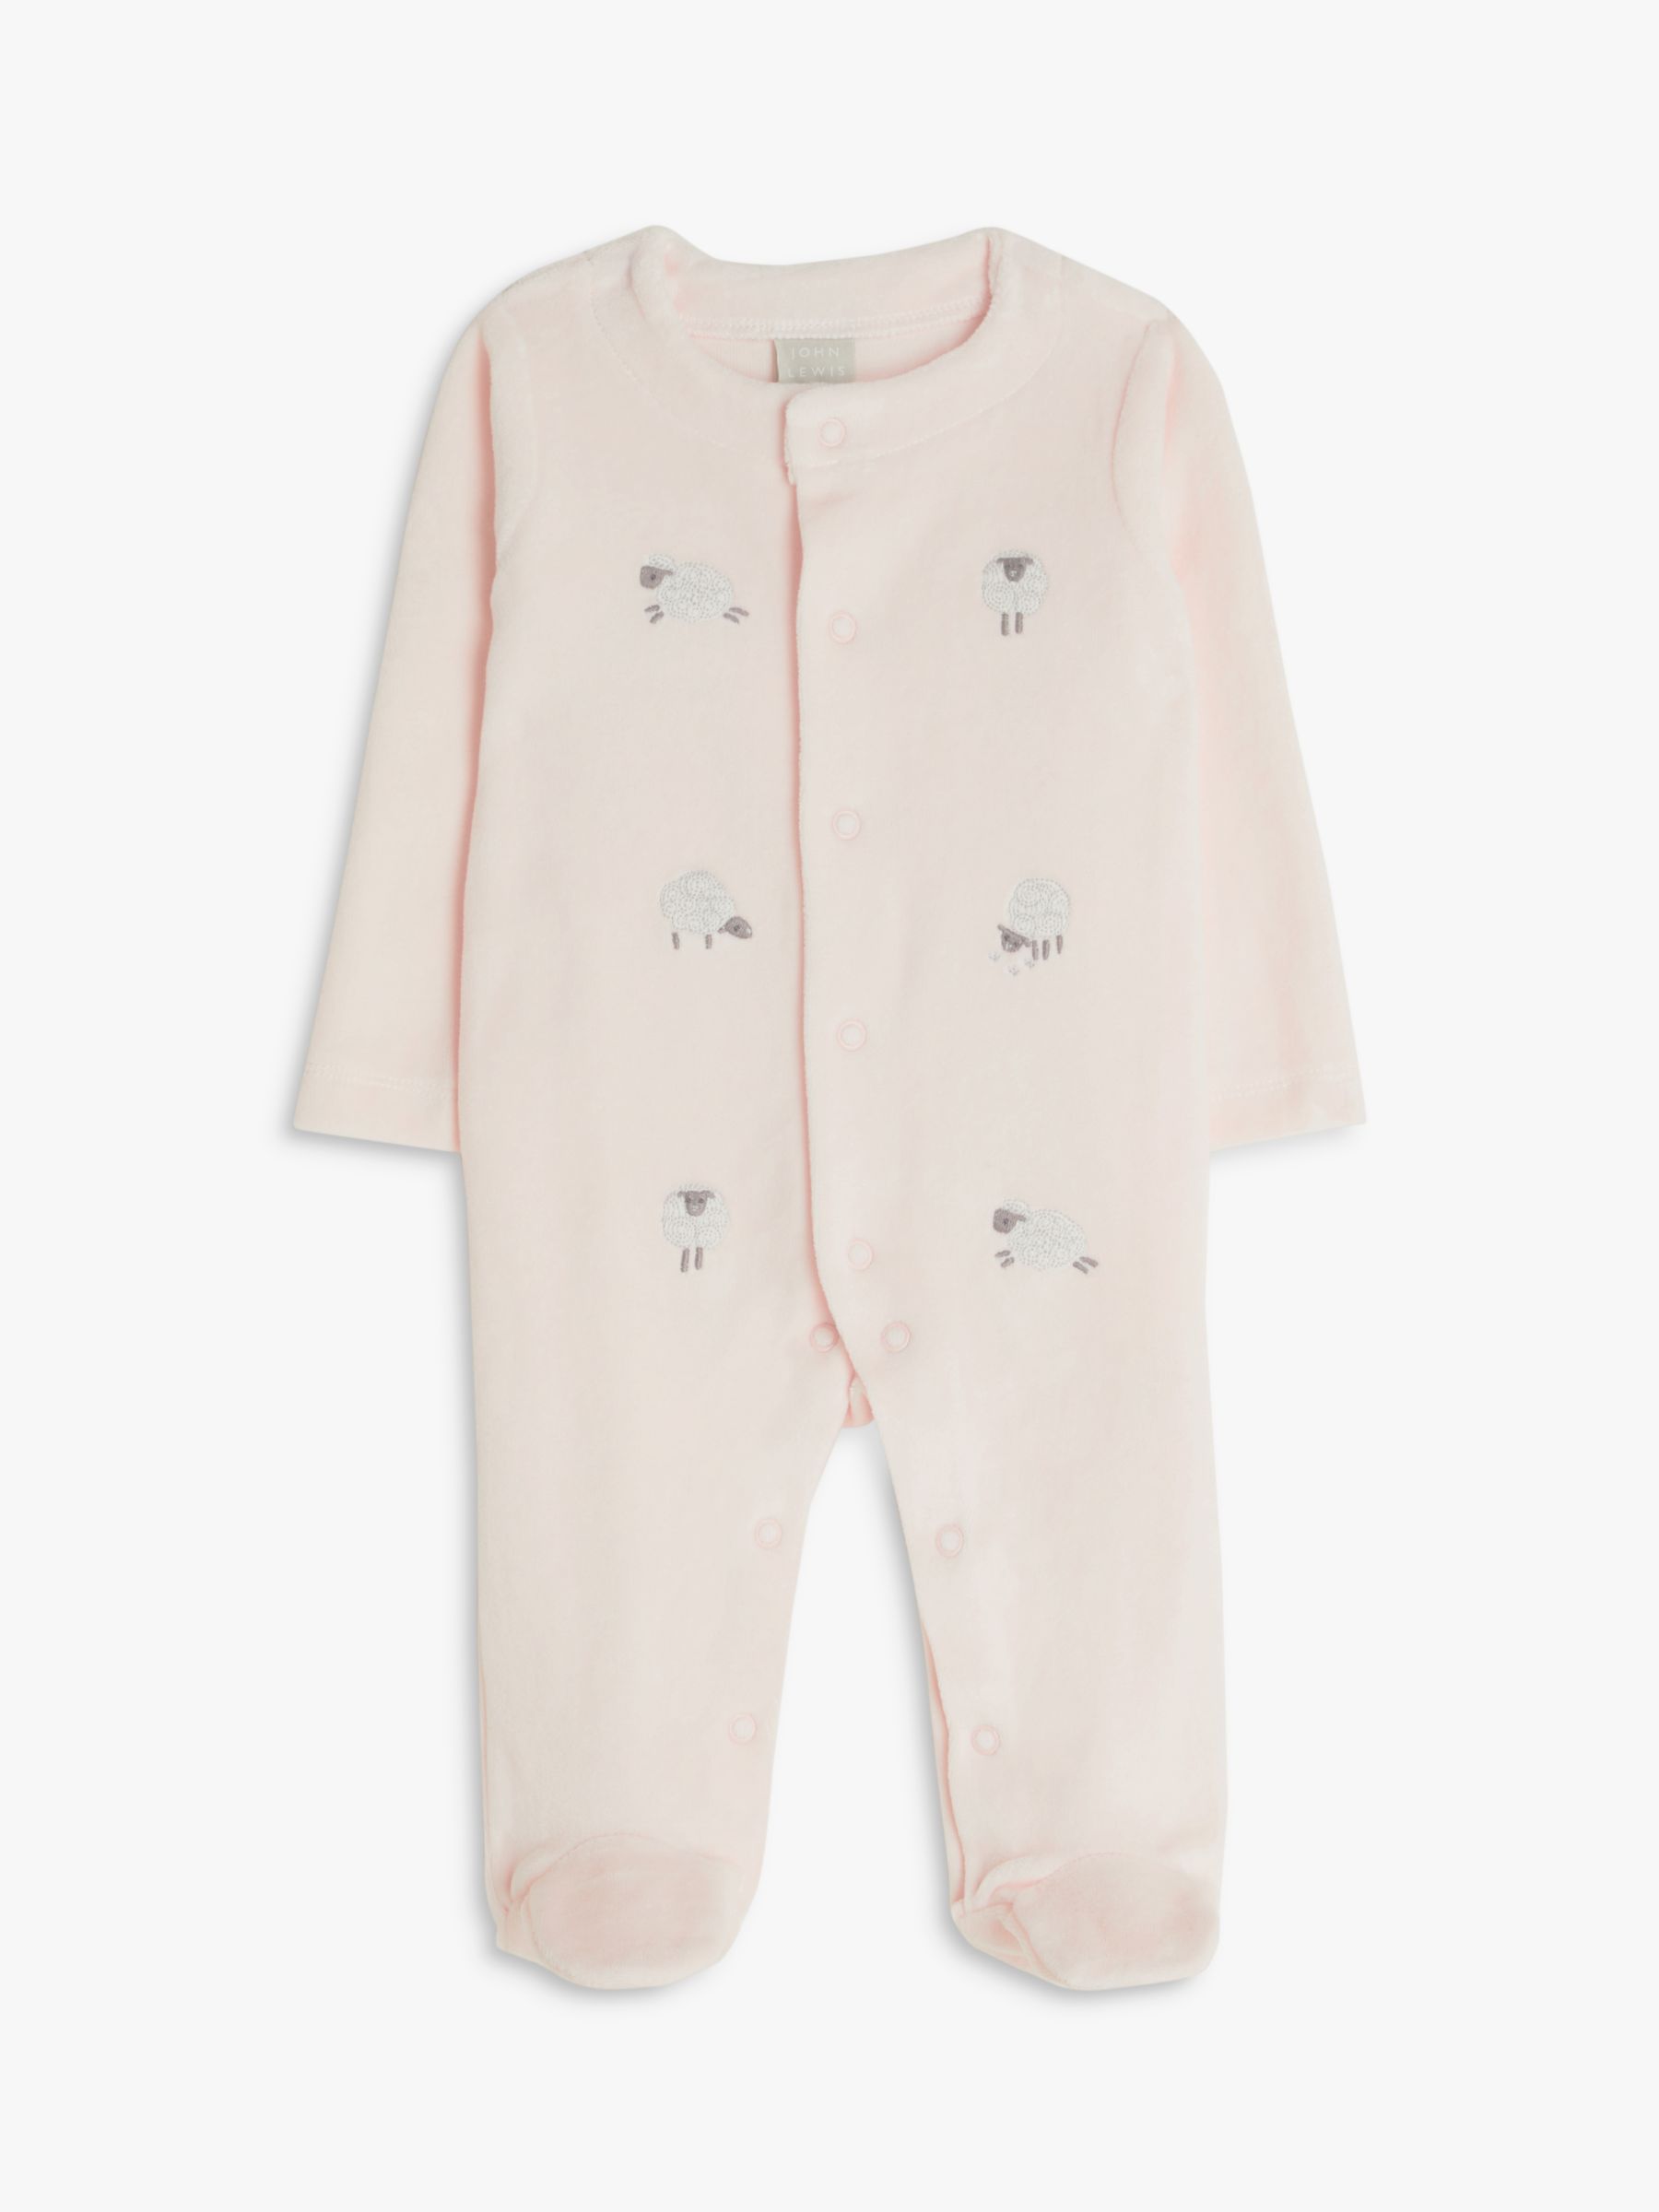 John Lewis Baby Sheep Velour Sleepsuit, Pink at John Lewis & Partners